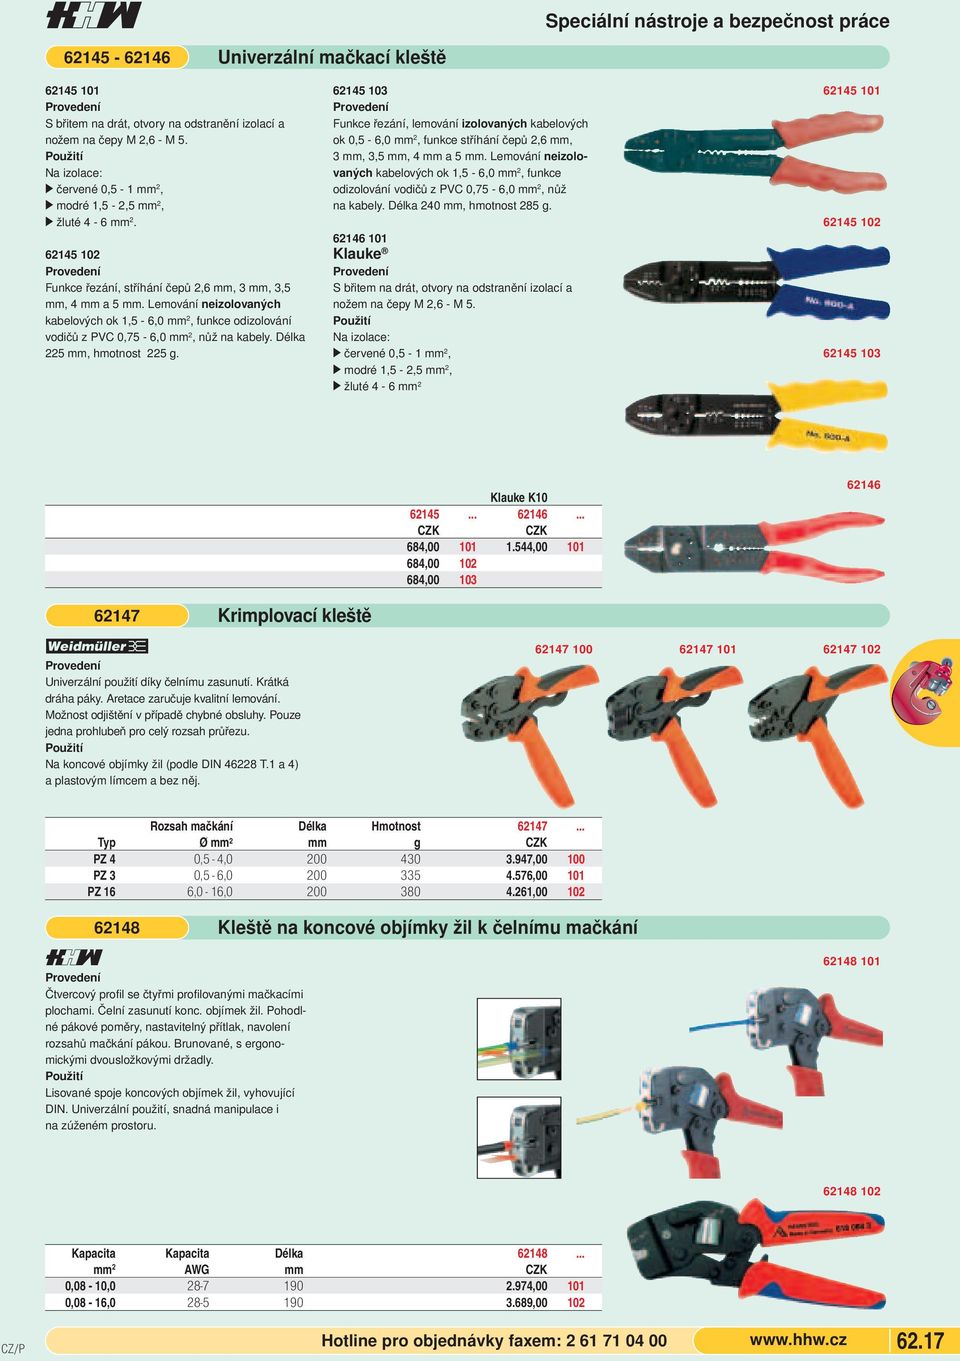 Lemování neizolovaných kabelových ok 1,5-6,0 mm 2, funkce odizolování vodičů z PVC 0,75-6,0 mm 2, nůž na kabely. Délka 225 mm, hmotnost 225 g.